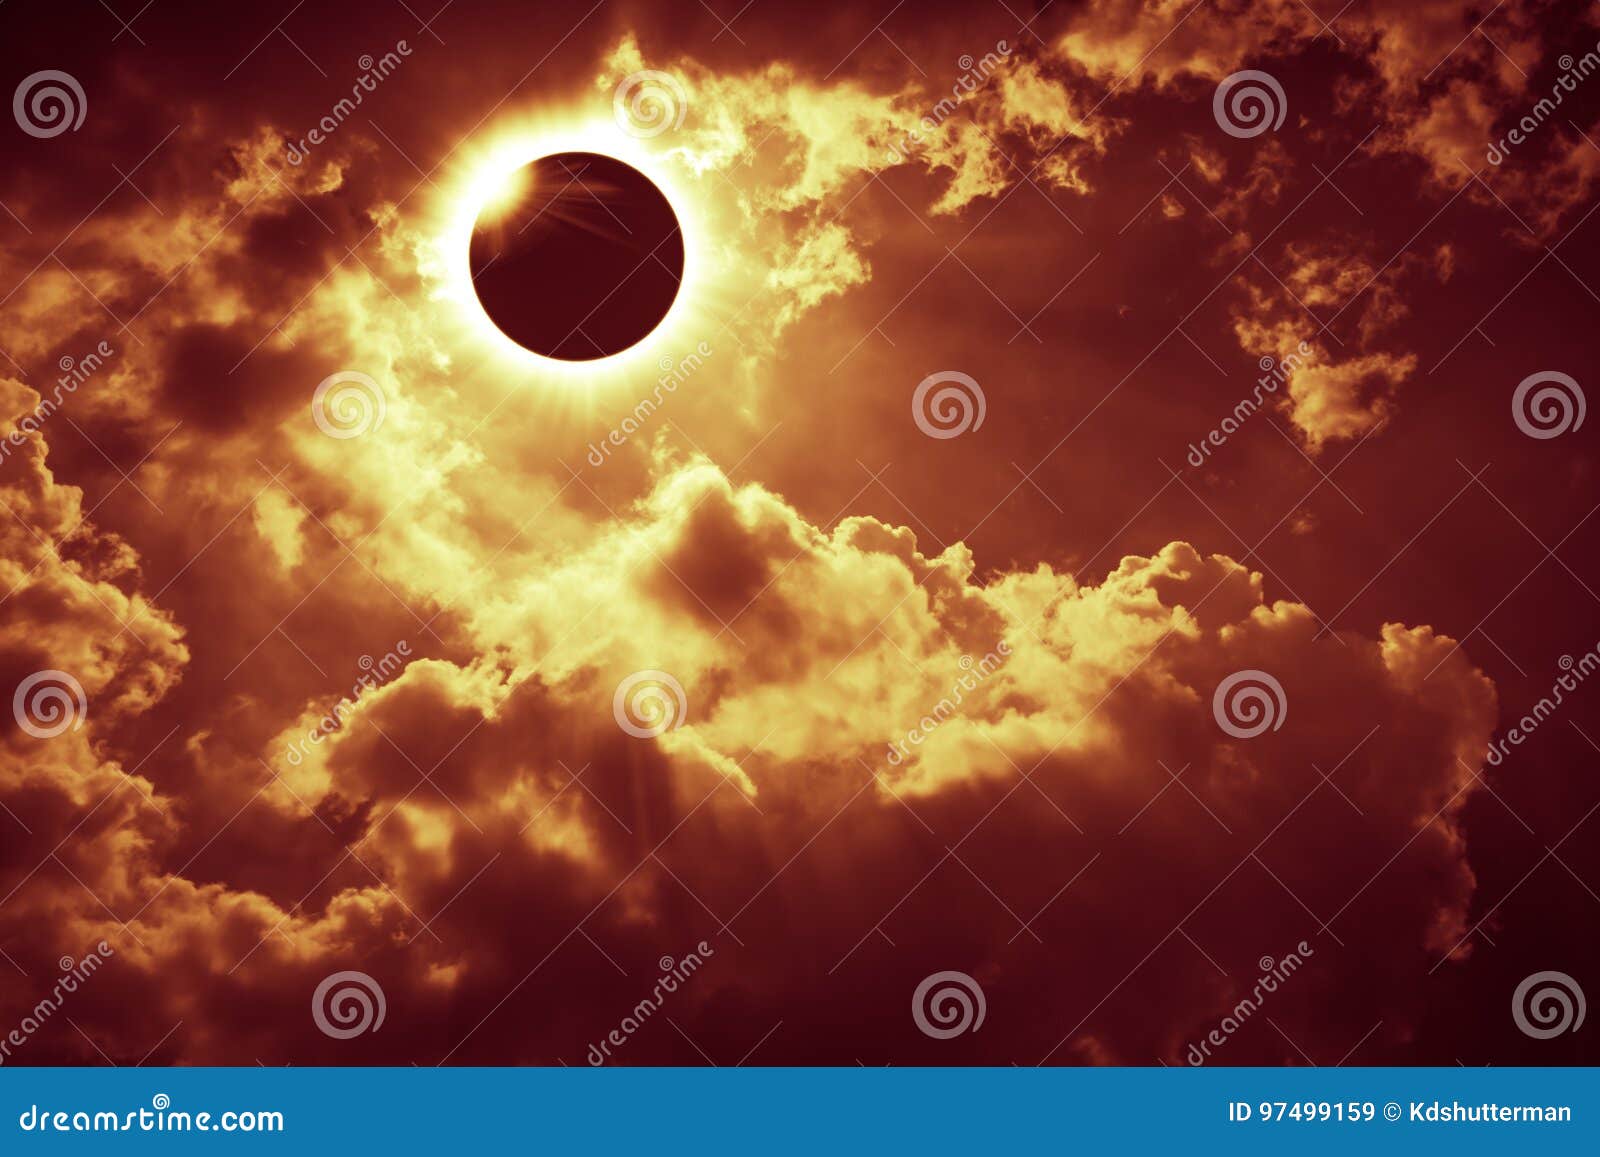 scientific natural phenomenon. total solar eclipse with diamond